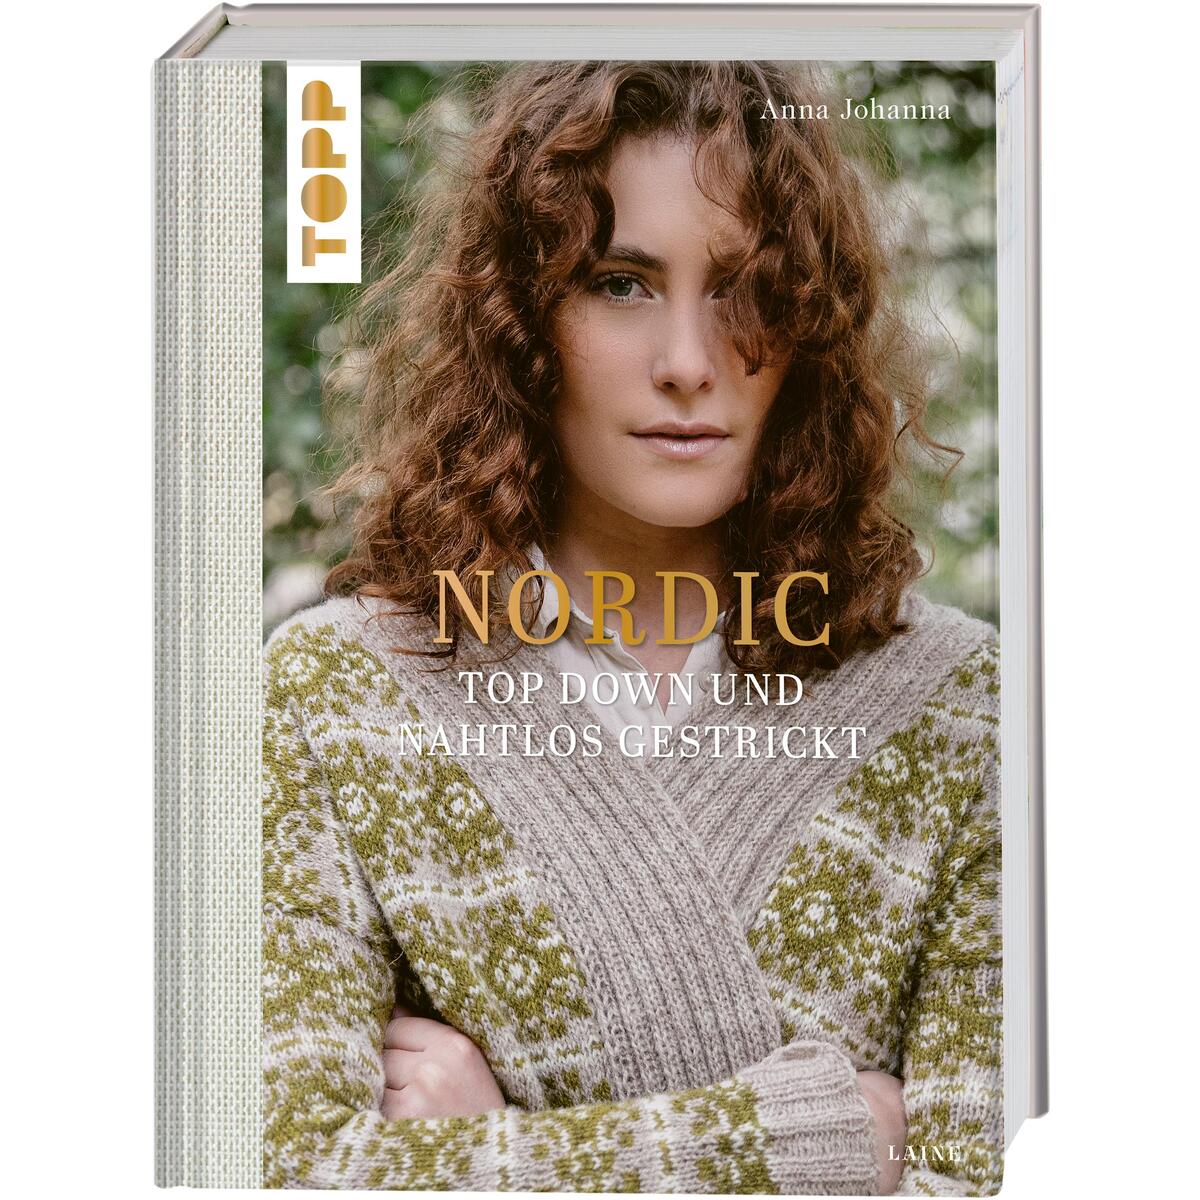 Nordic - Top Down und nahtlos gestrickt (Laine) von Frech Verlag GmbH